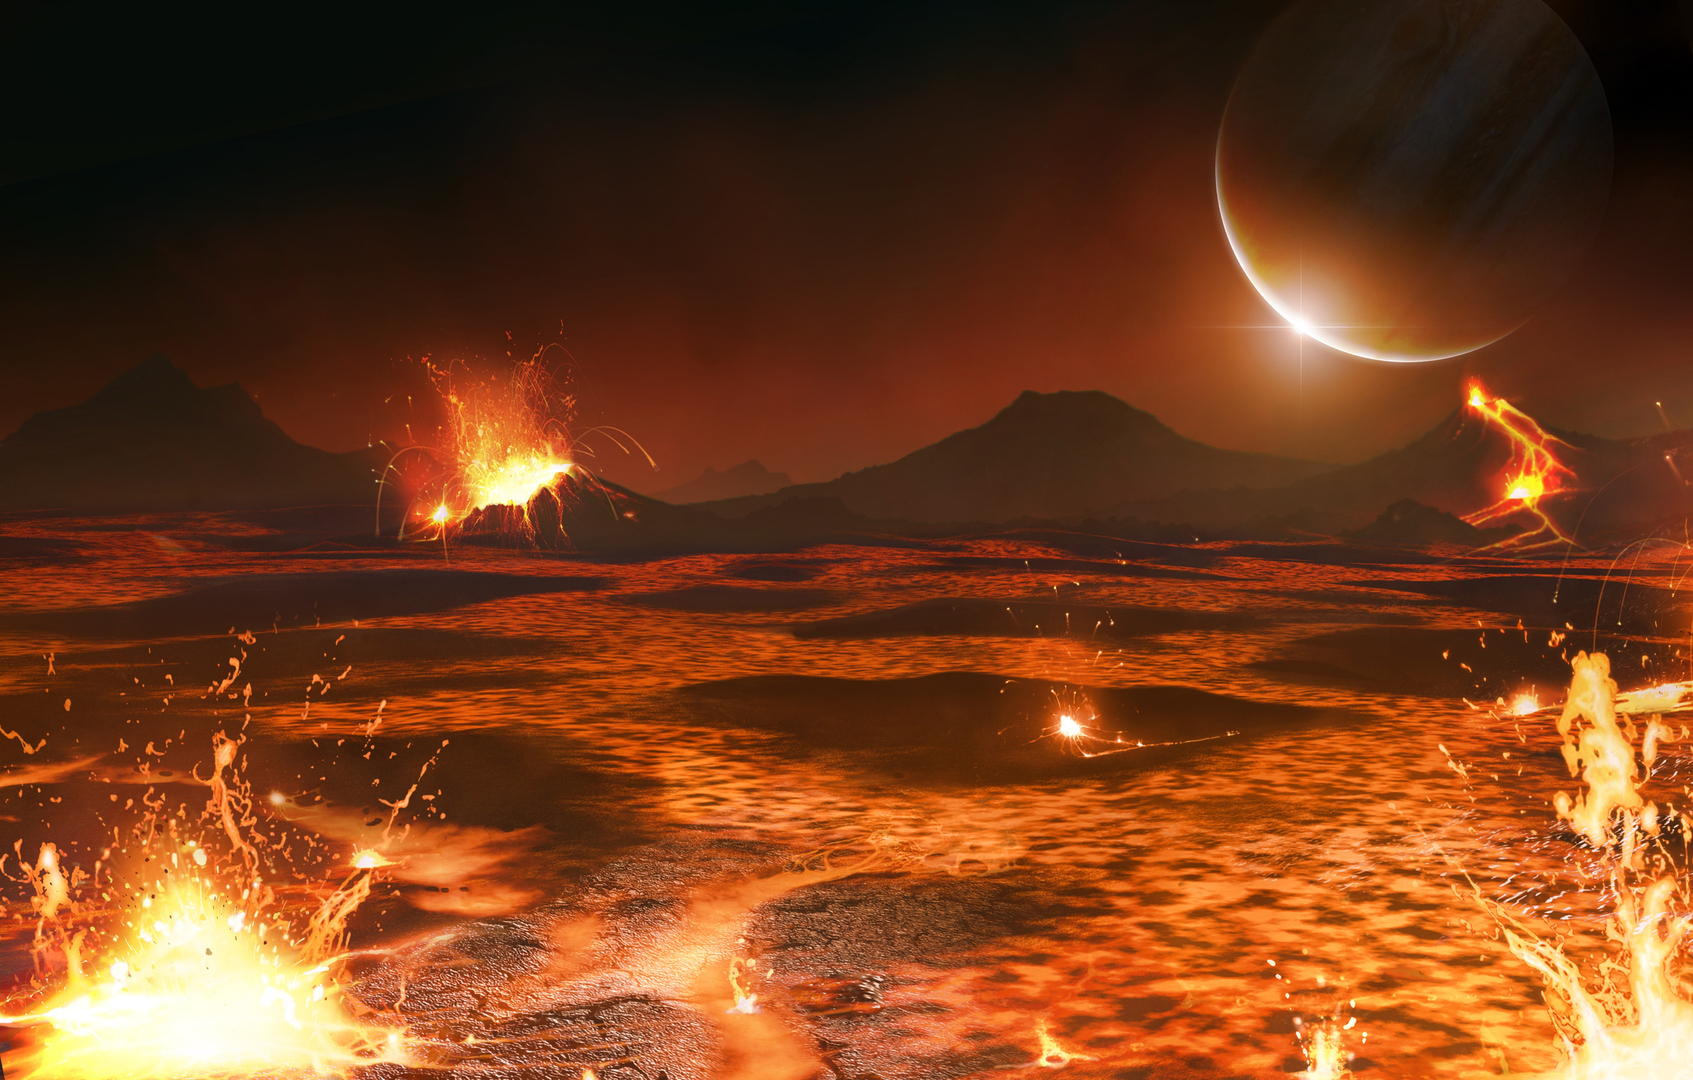 انفجار بركاني هائل محطم للأرقام القياسية امتد لأشهر في قمر المشتري 